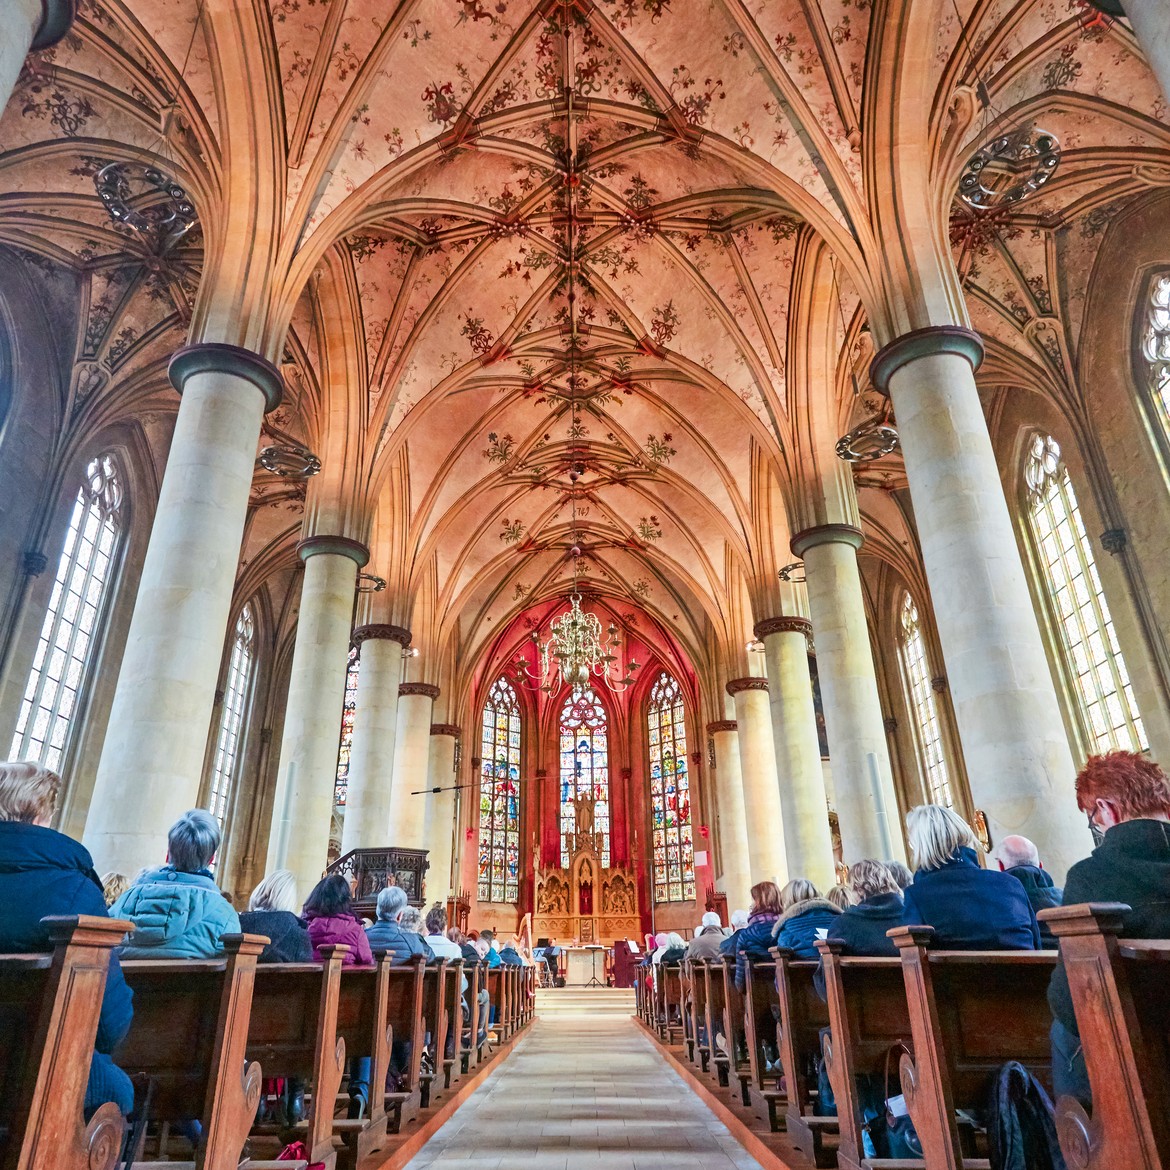 Veranstaltung "finde dein Licht" 2020 in der Pfarrkirche St. Martinus Nottuln